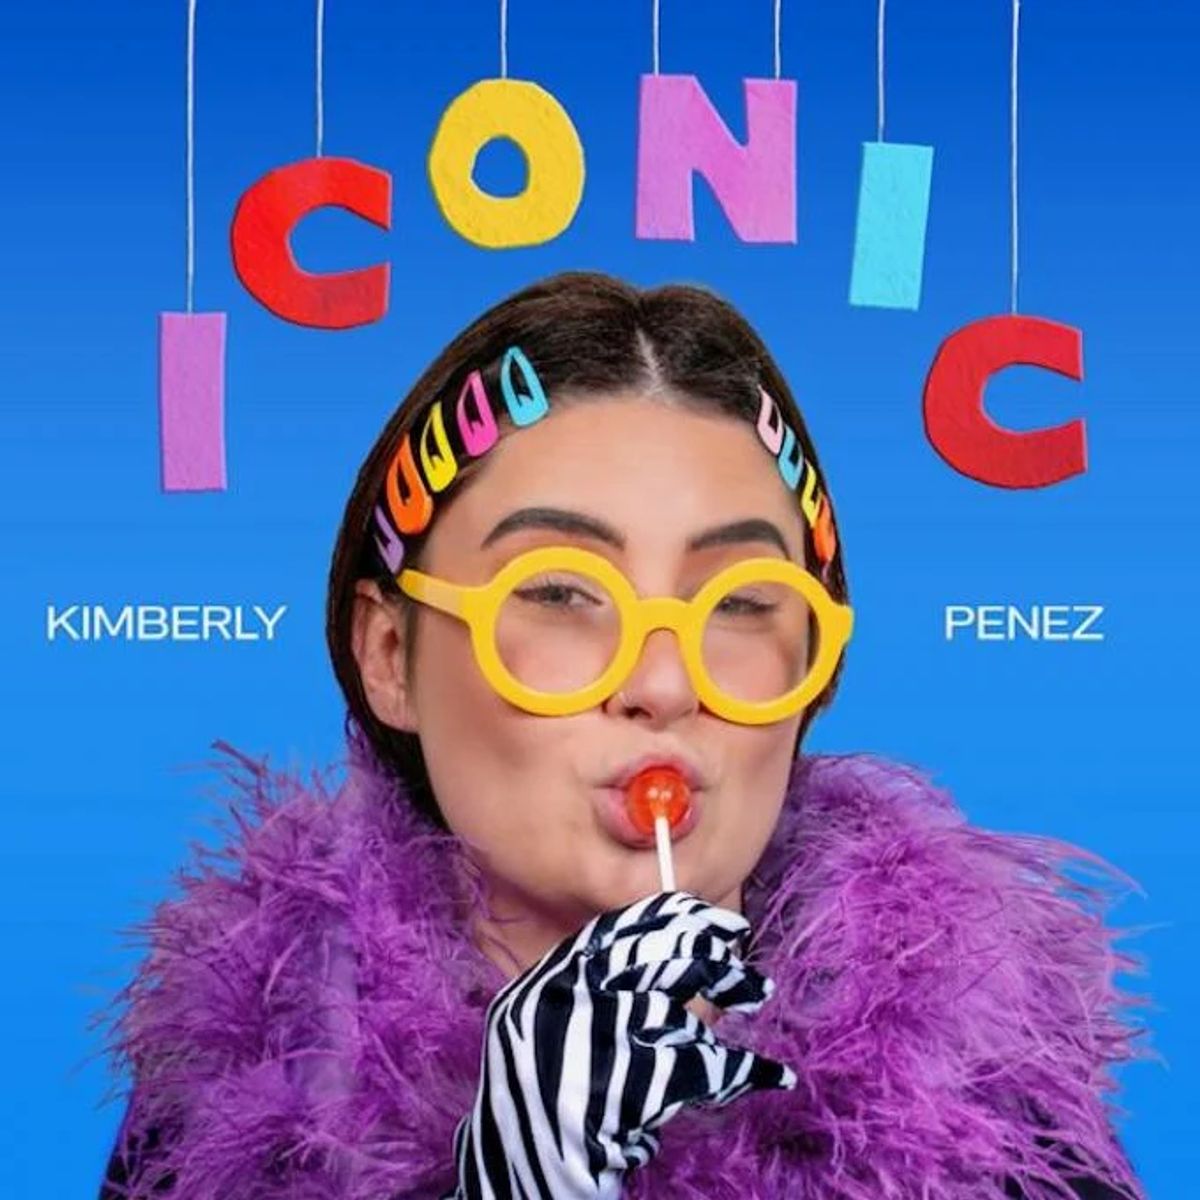 Kimberly Penez - Iconic